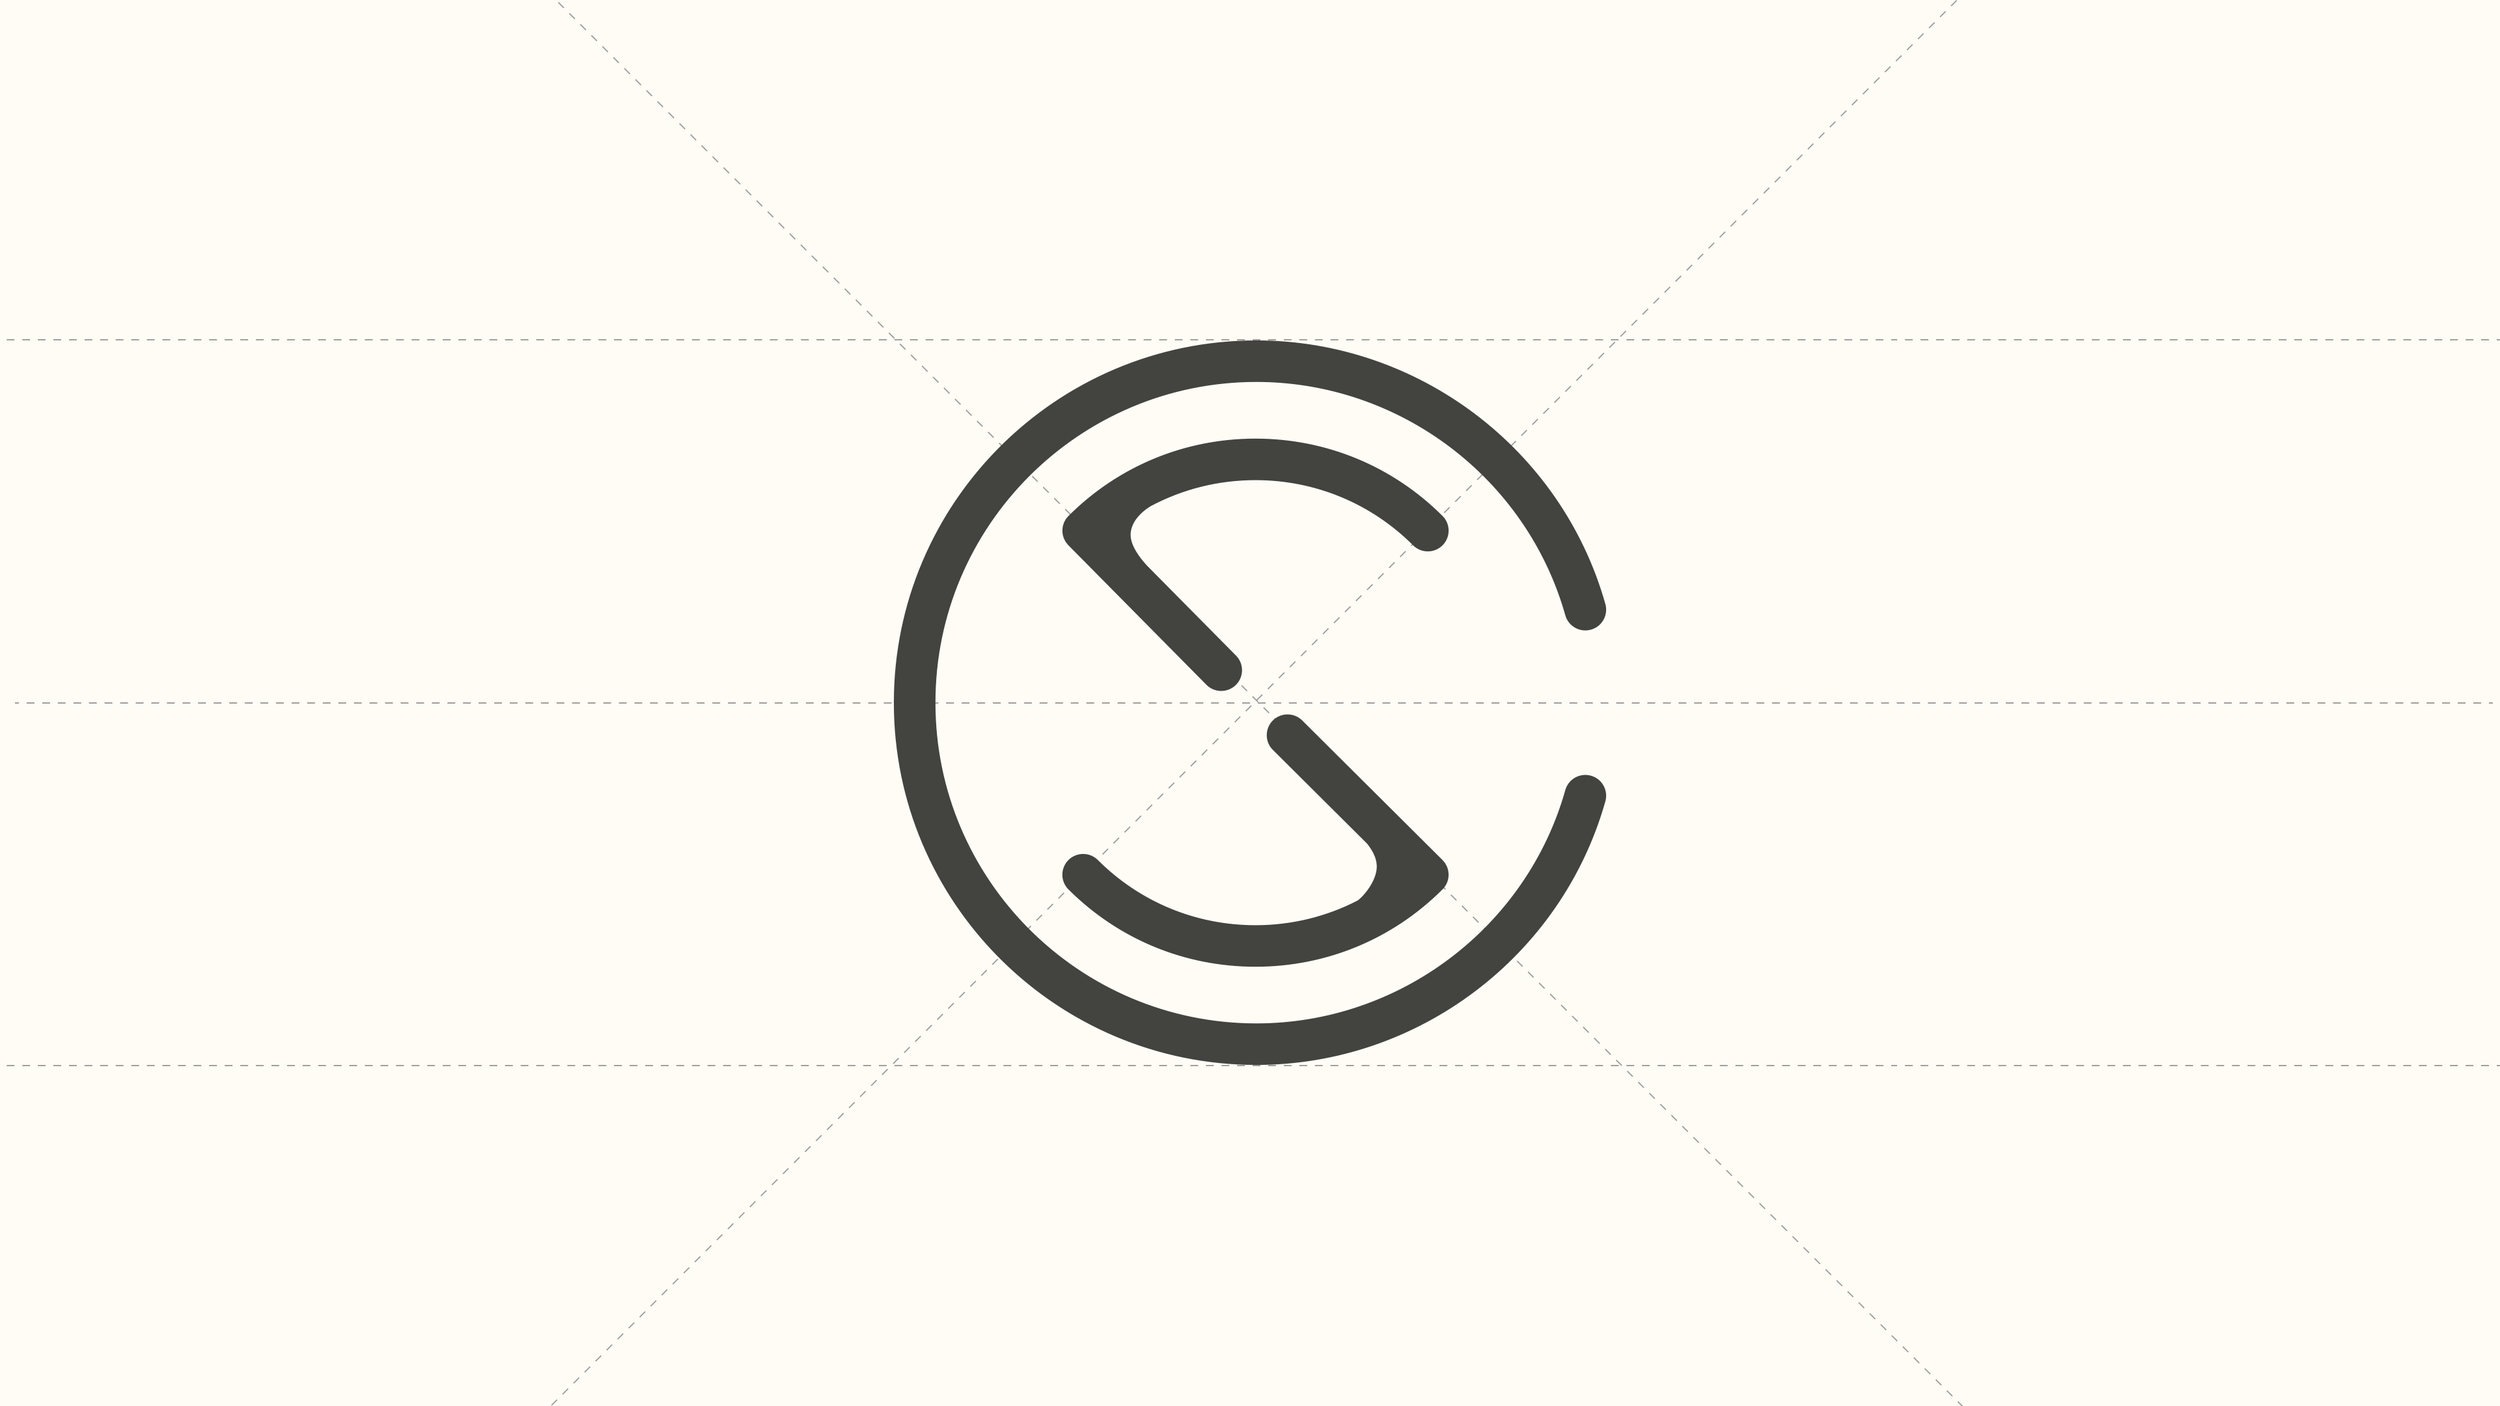 SC_Logo_1.jpg